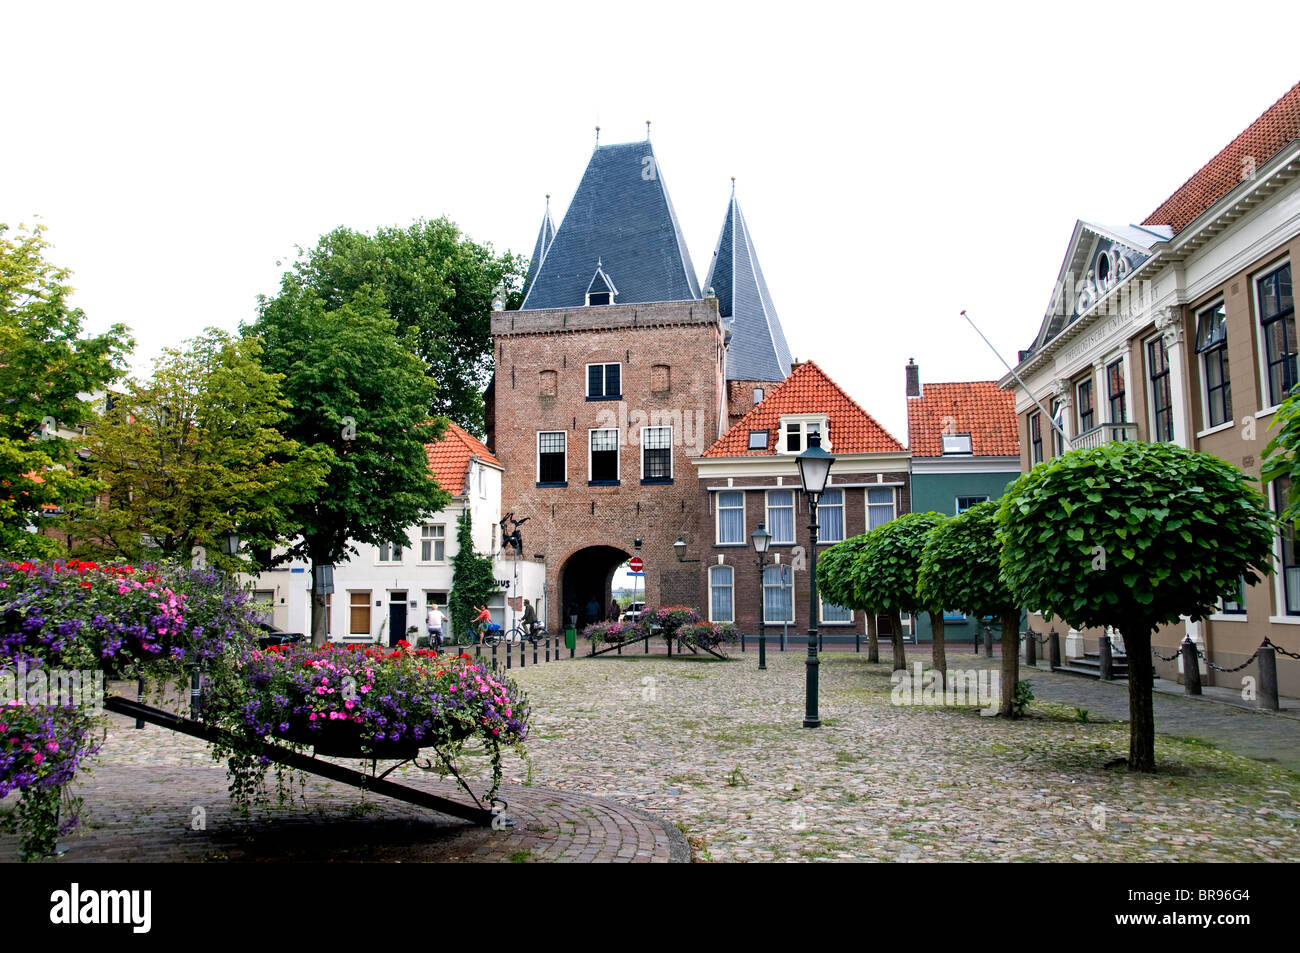 Kampen Overijssel Netherlands town city historic Stock Photo